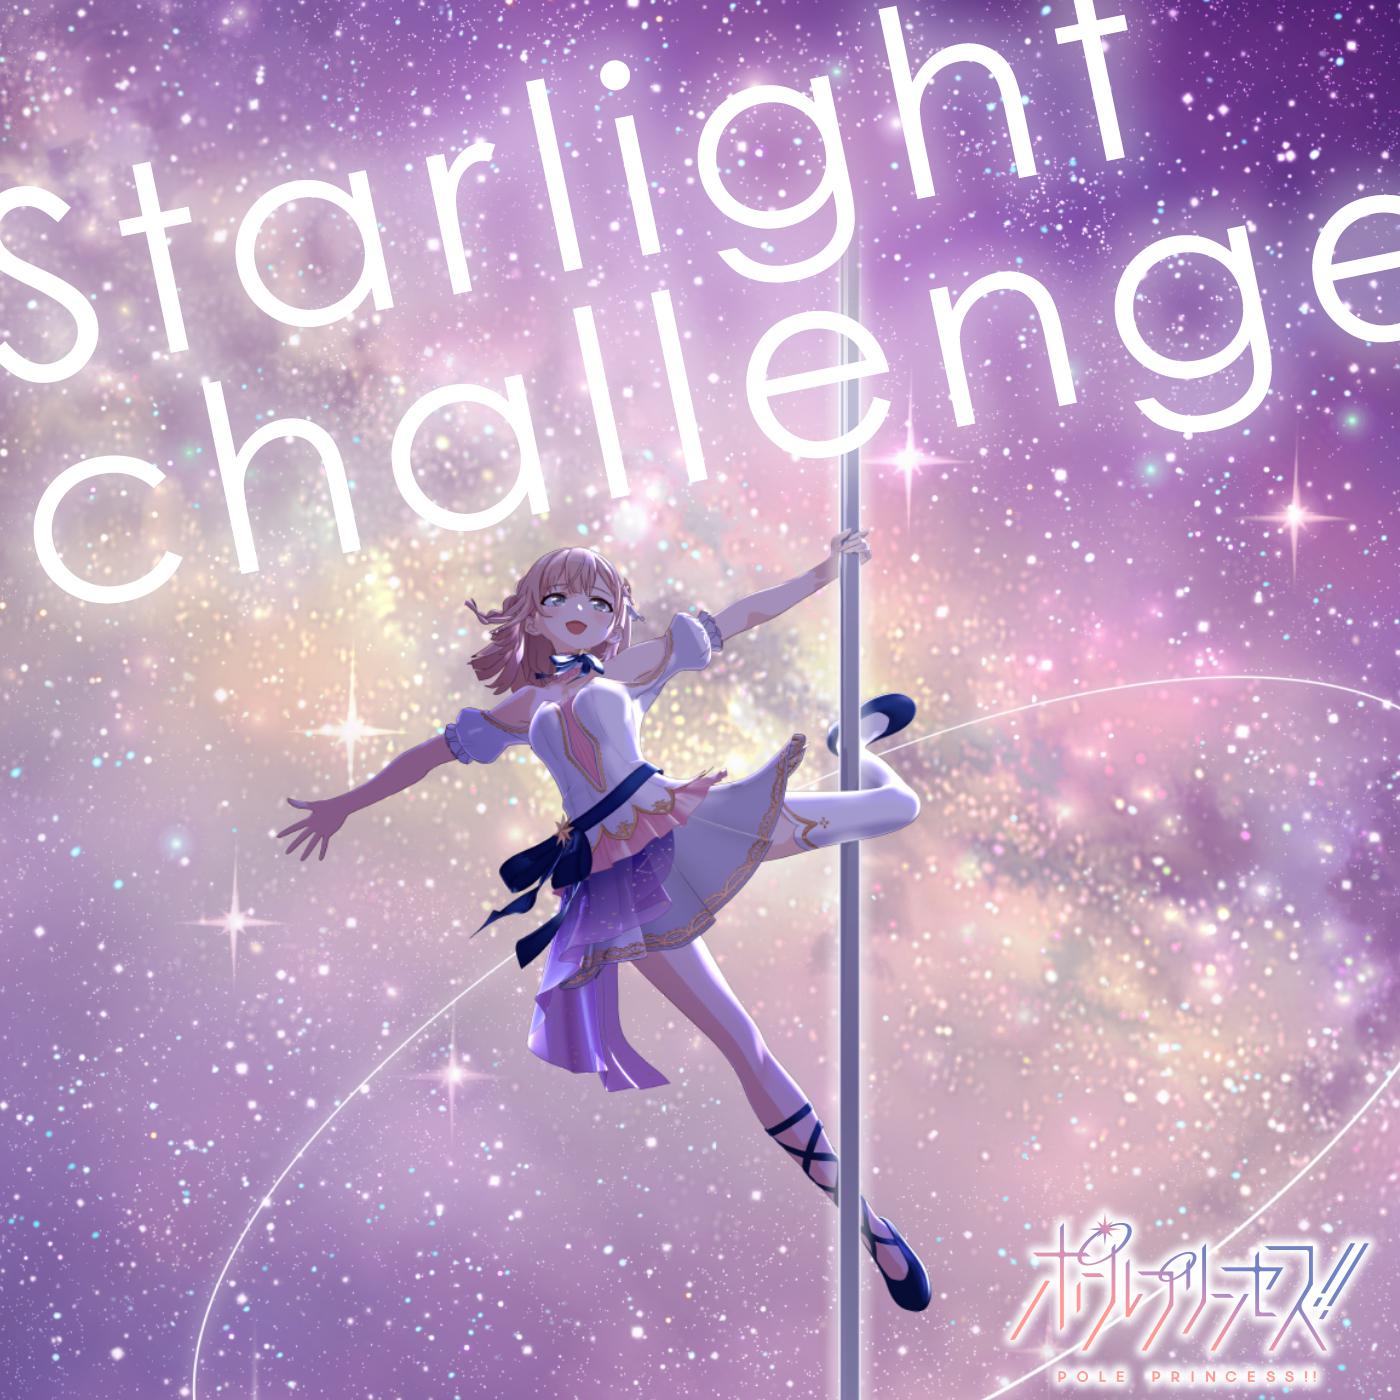 土屋李央 - Starlight challenge